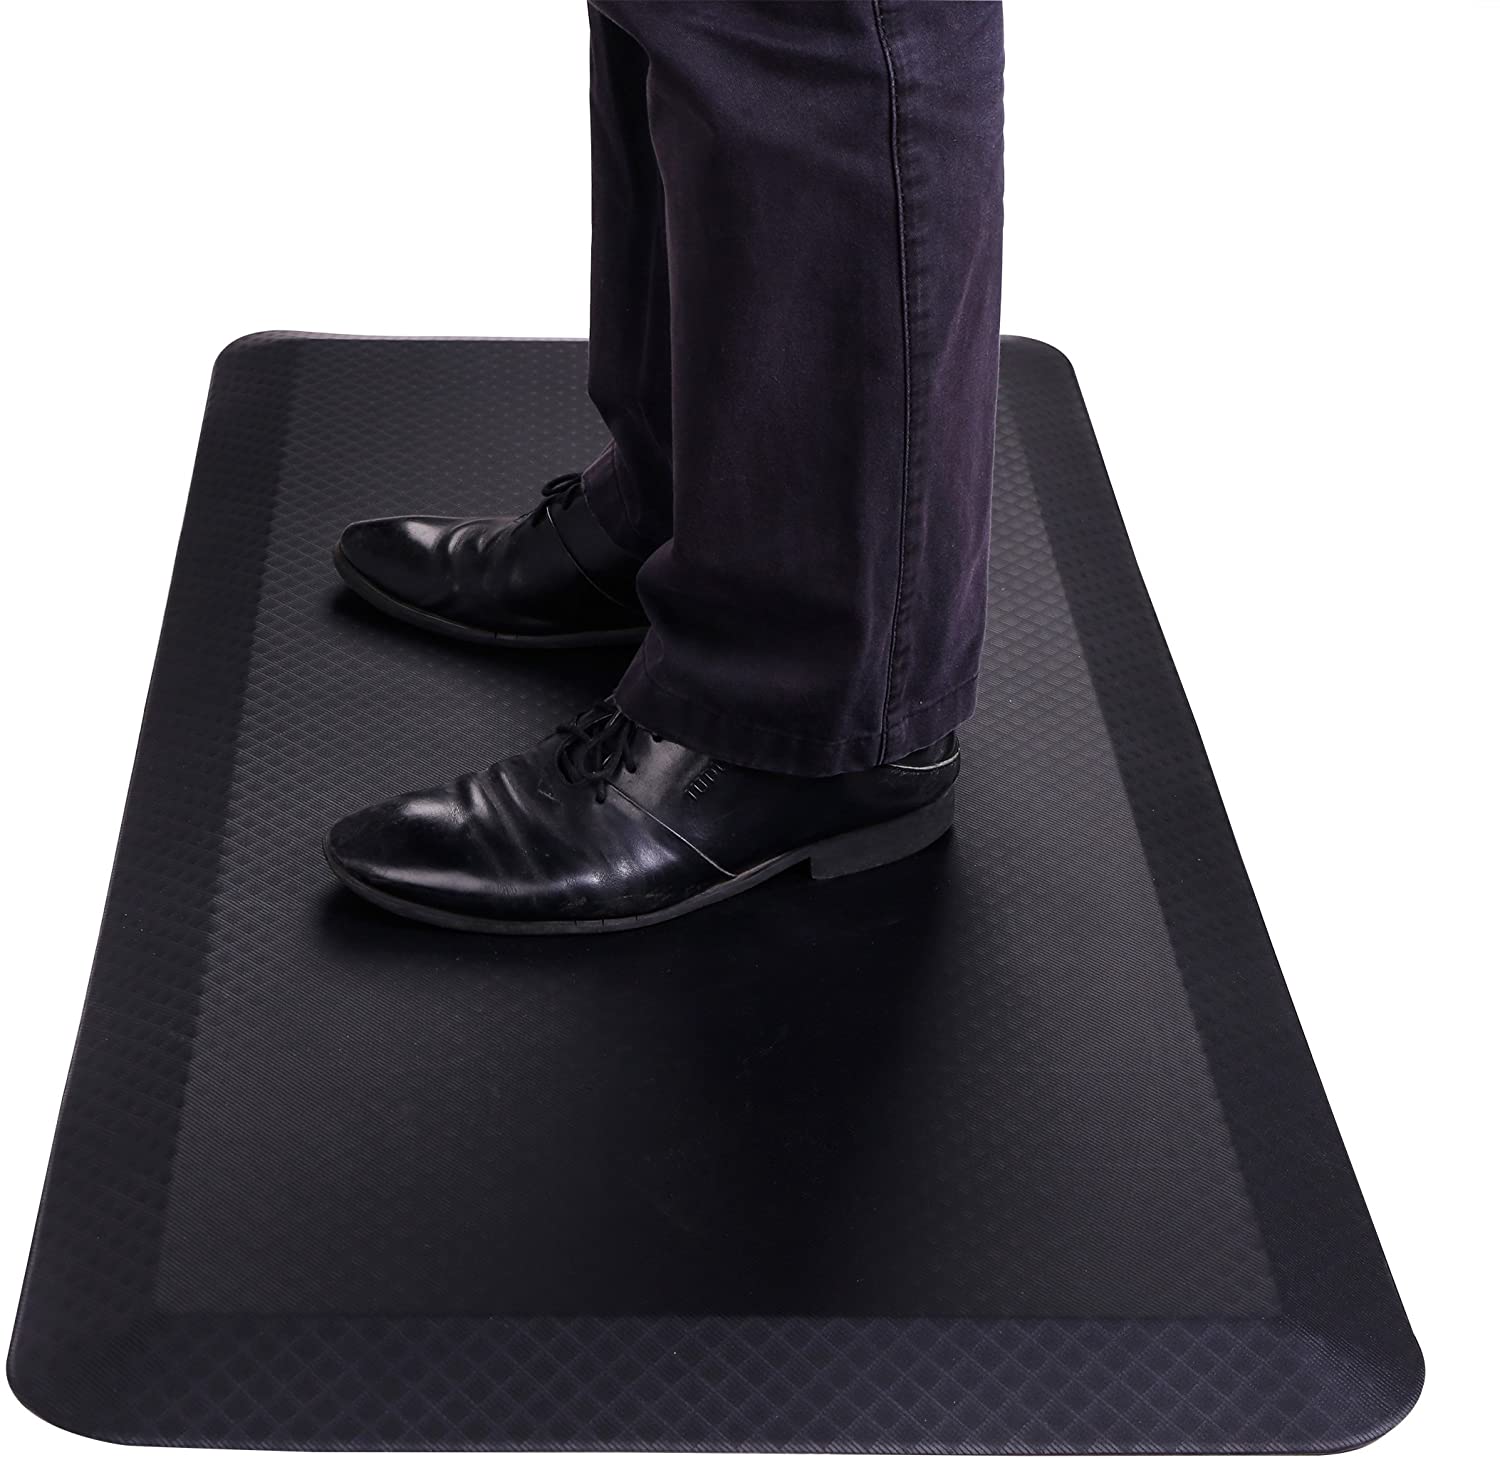 New 4 PCS Kitchen Mat Standing Desk Mat Rug Anti-Fatigue Floor Mat 20" x 36" P48 